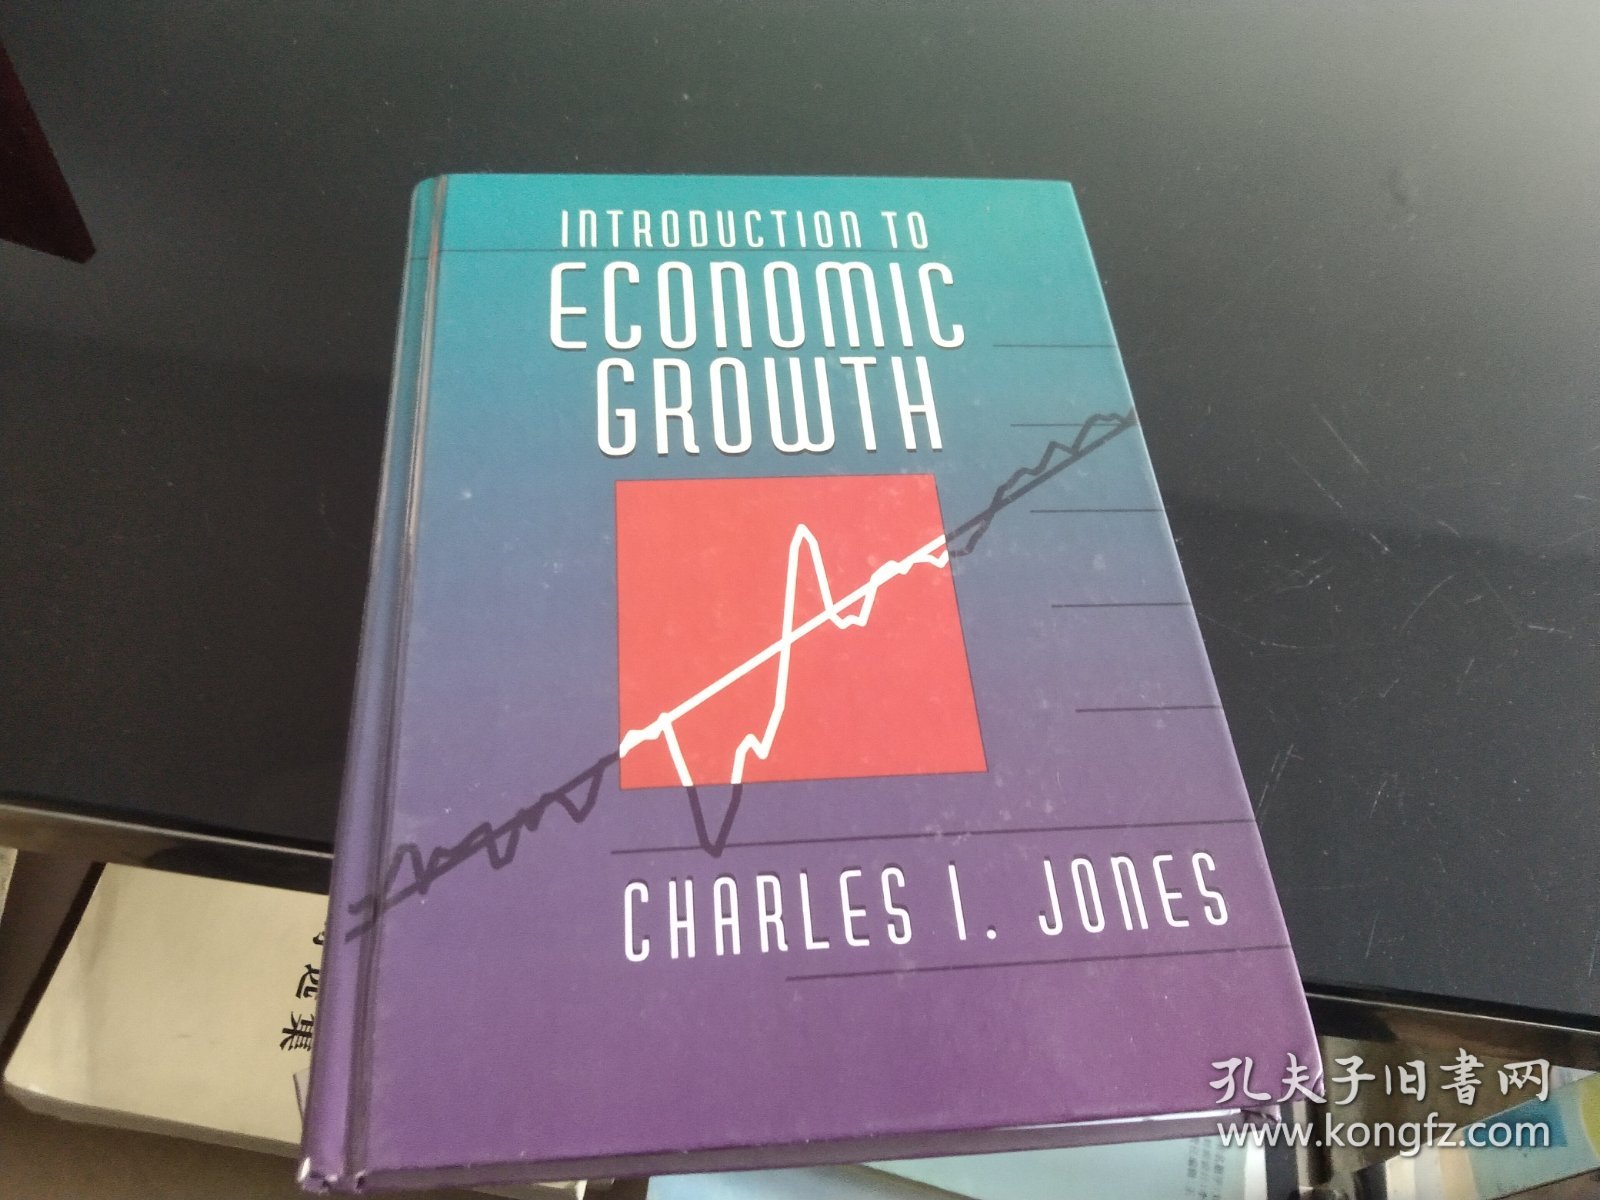 经济增长导论 Introduction to Economy Growth